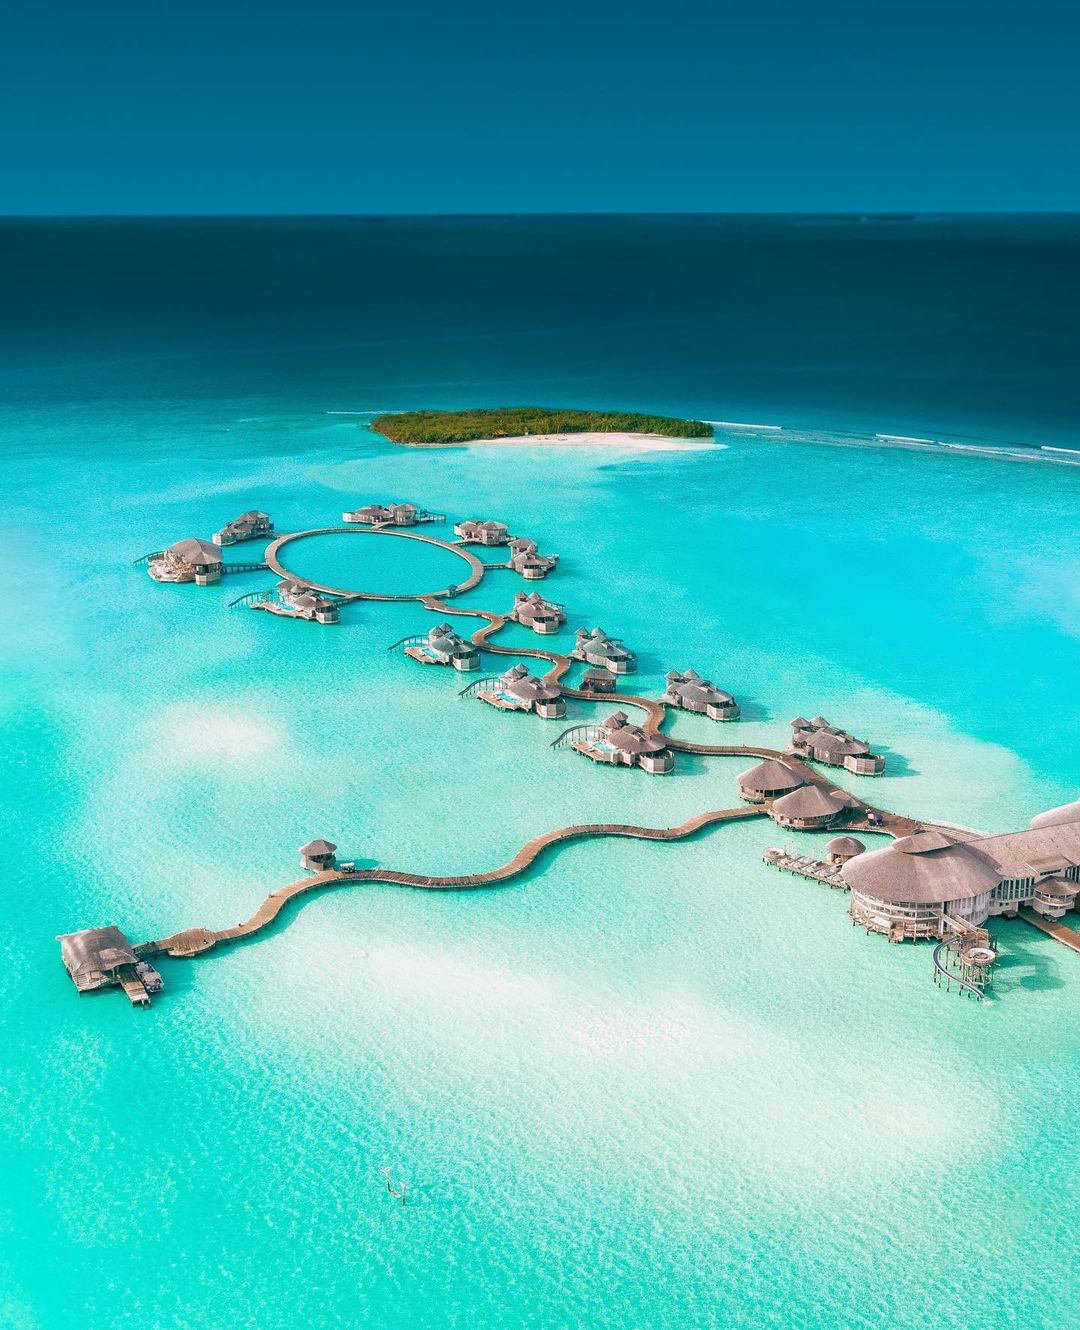 索尼娃贾尼岛 Soneva Jani ,马尔代夫风景图片集:沙滩beach与海水water太美，泳池pool与水上活动watersport好玩